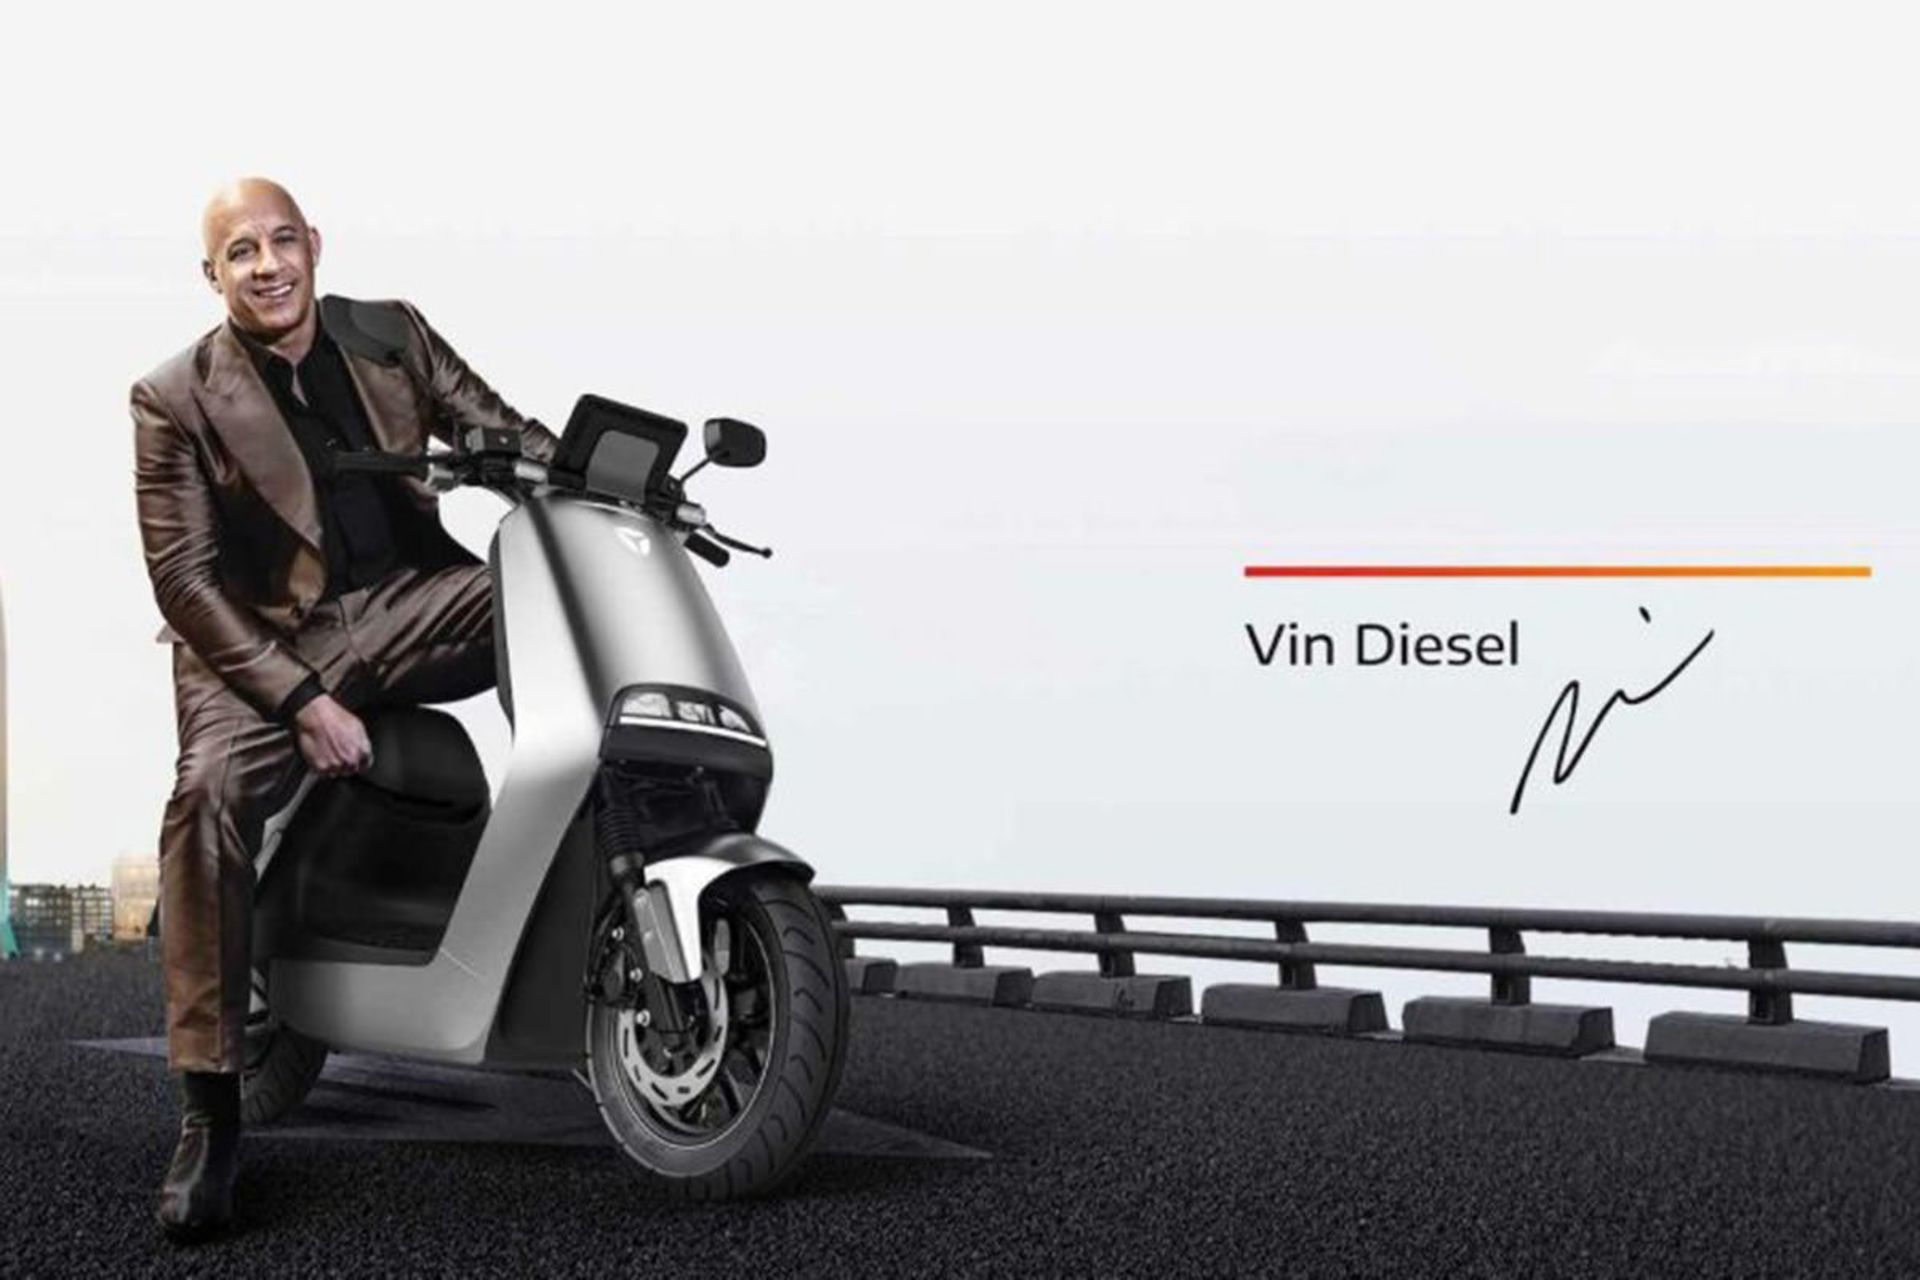 تبلیغ وین دیزل / vin diesel با اسکوتر برقی / electric scooter چینی Yadea G5